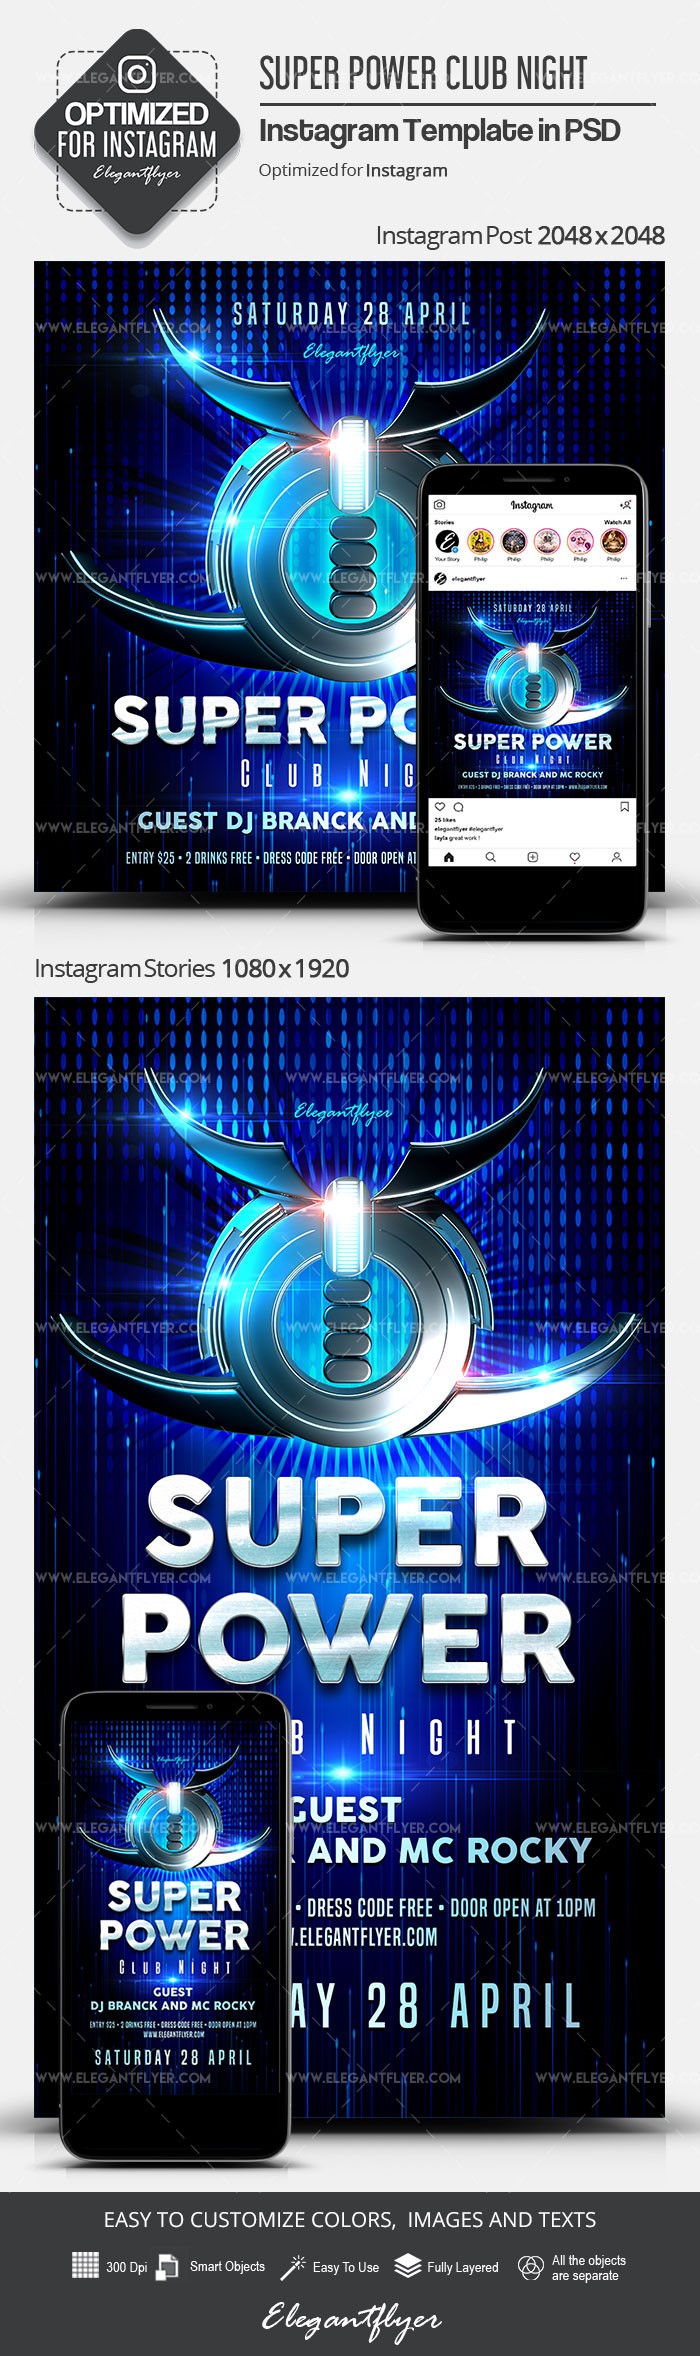 Super Power Club Night Instagram -> Super Power Klubowa Noc na Instagramie by ElegantFlyer